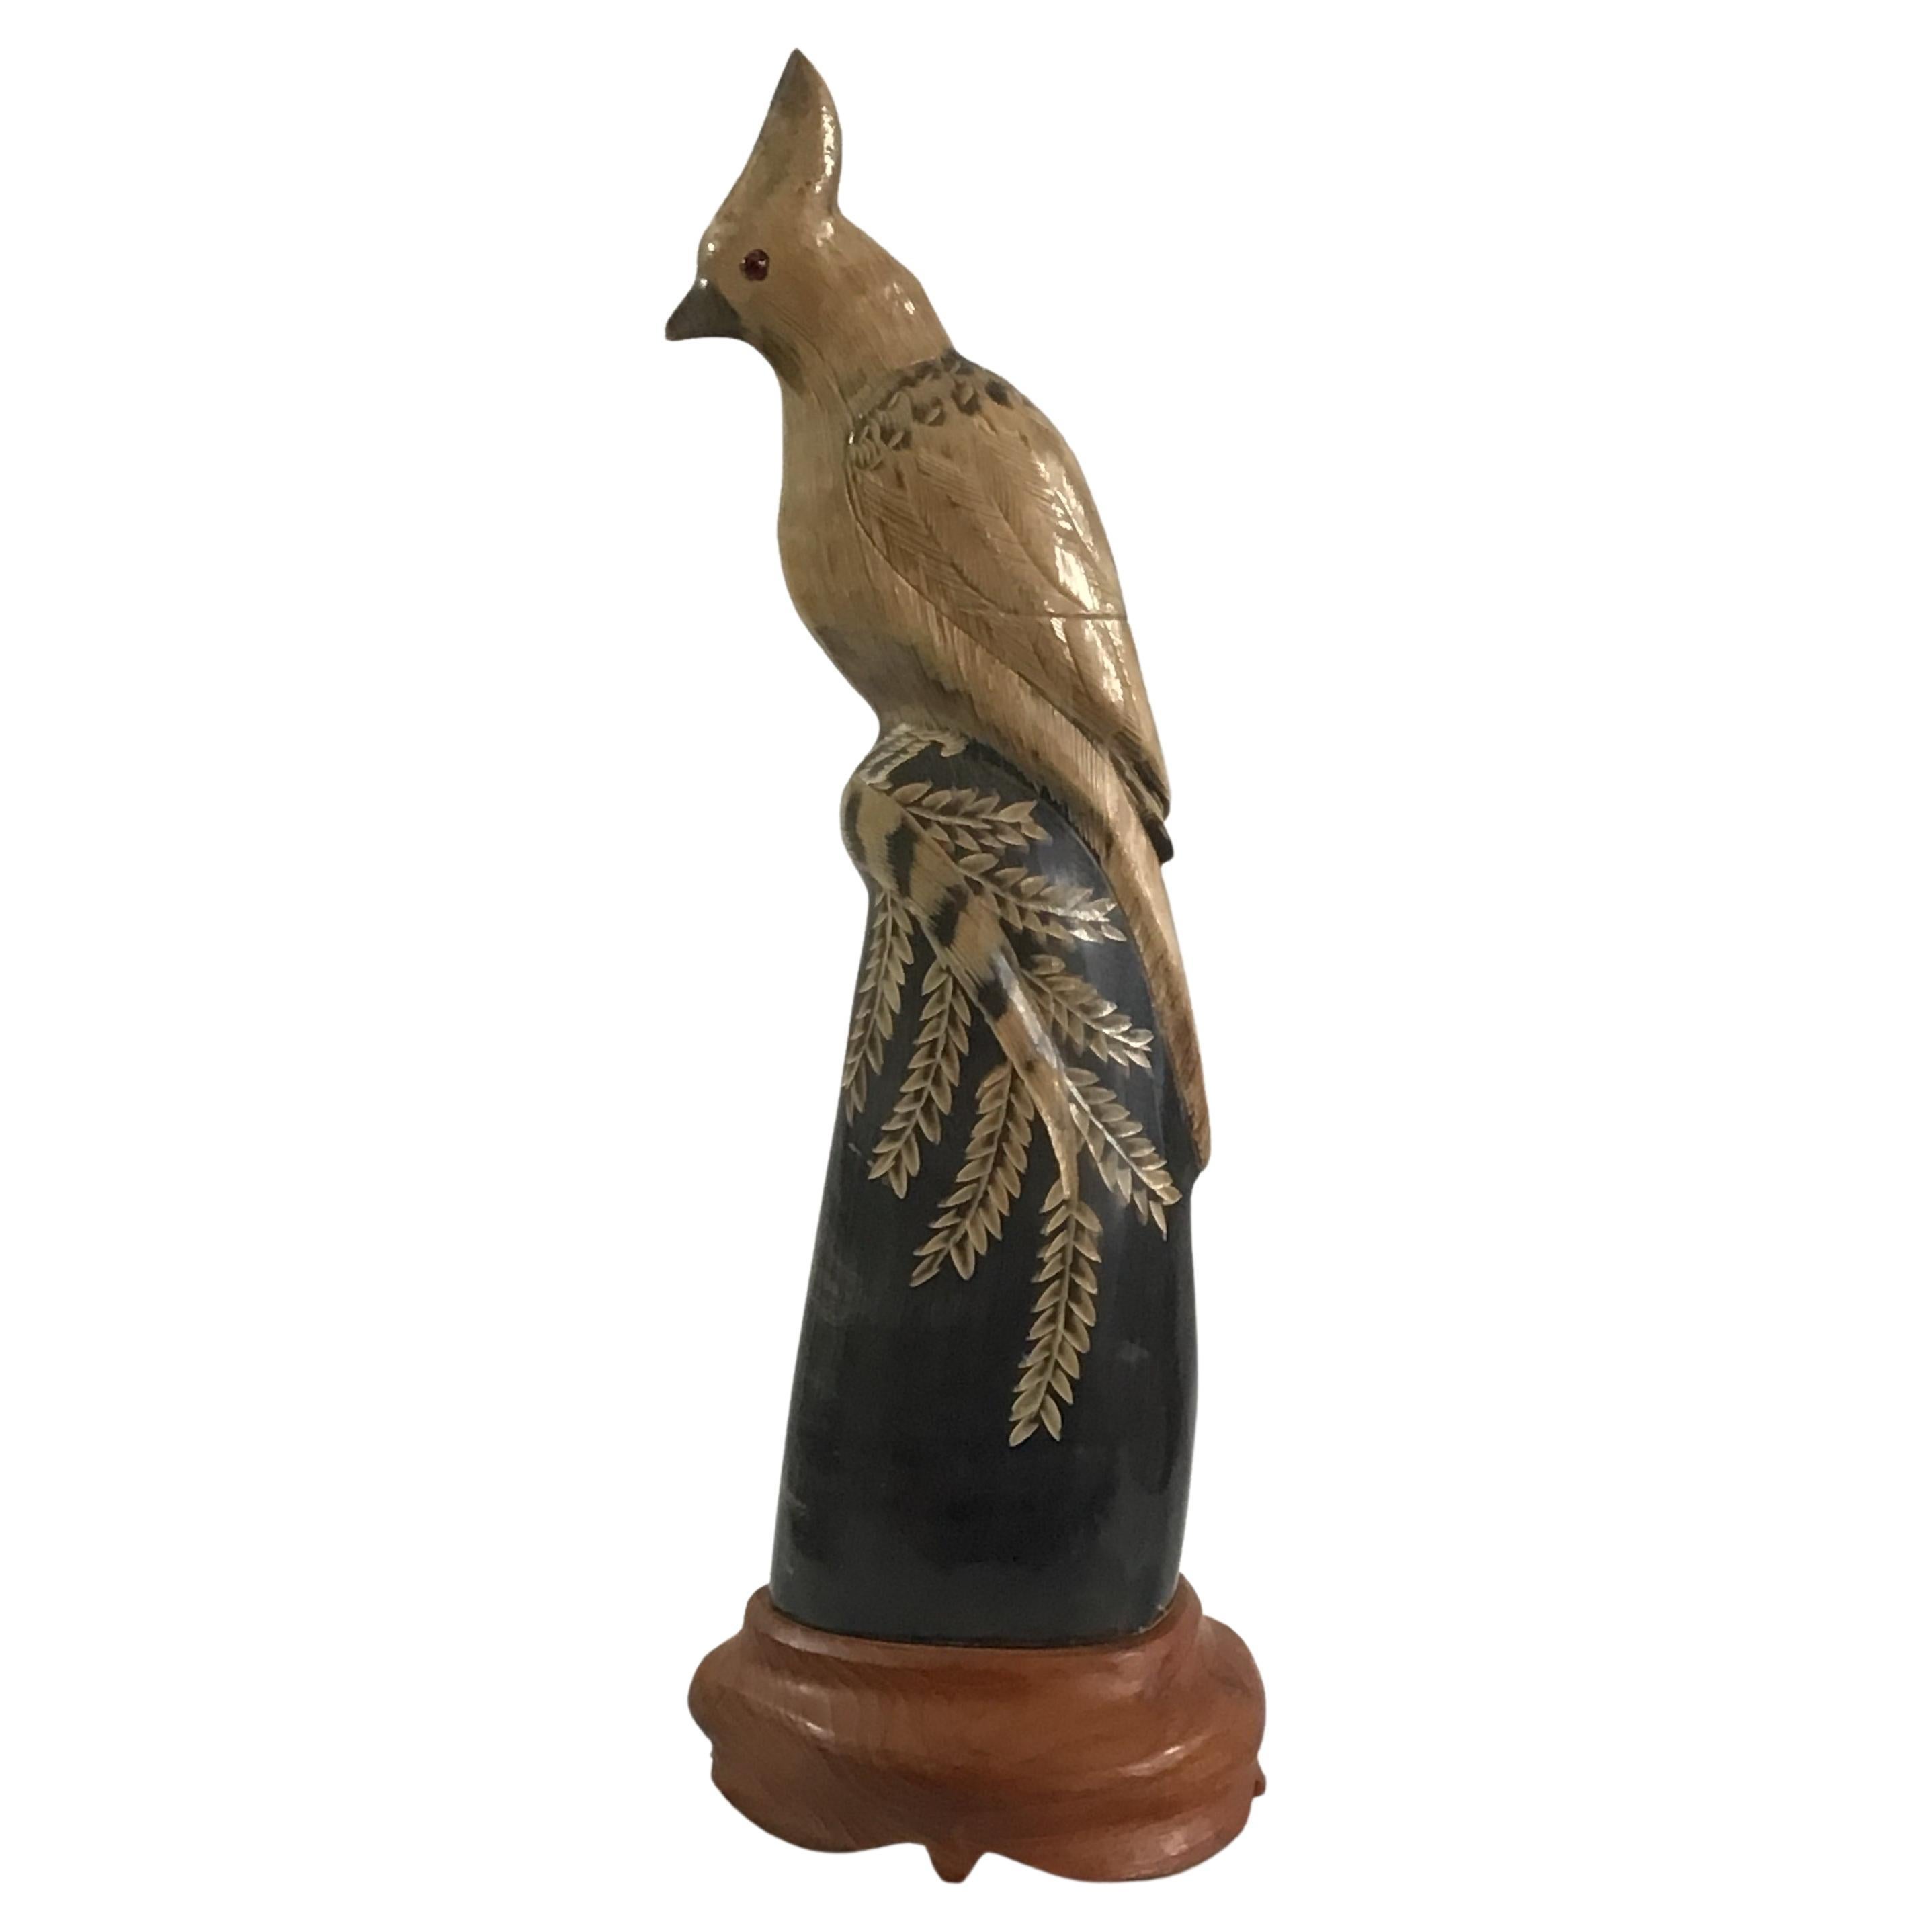 1940er Jahre Han geschnitzte Wasserbüffelhorn-Skulptur eines detaillierten Vogels auf einem Holzsockel